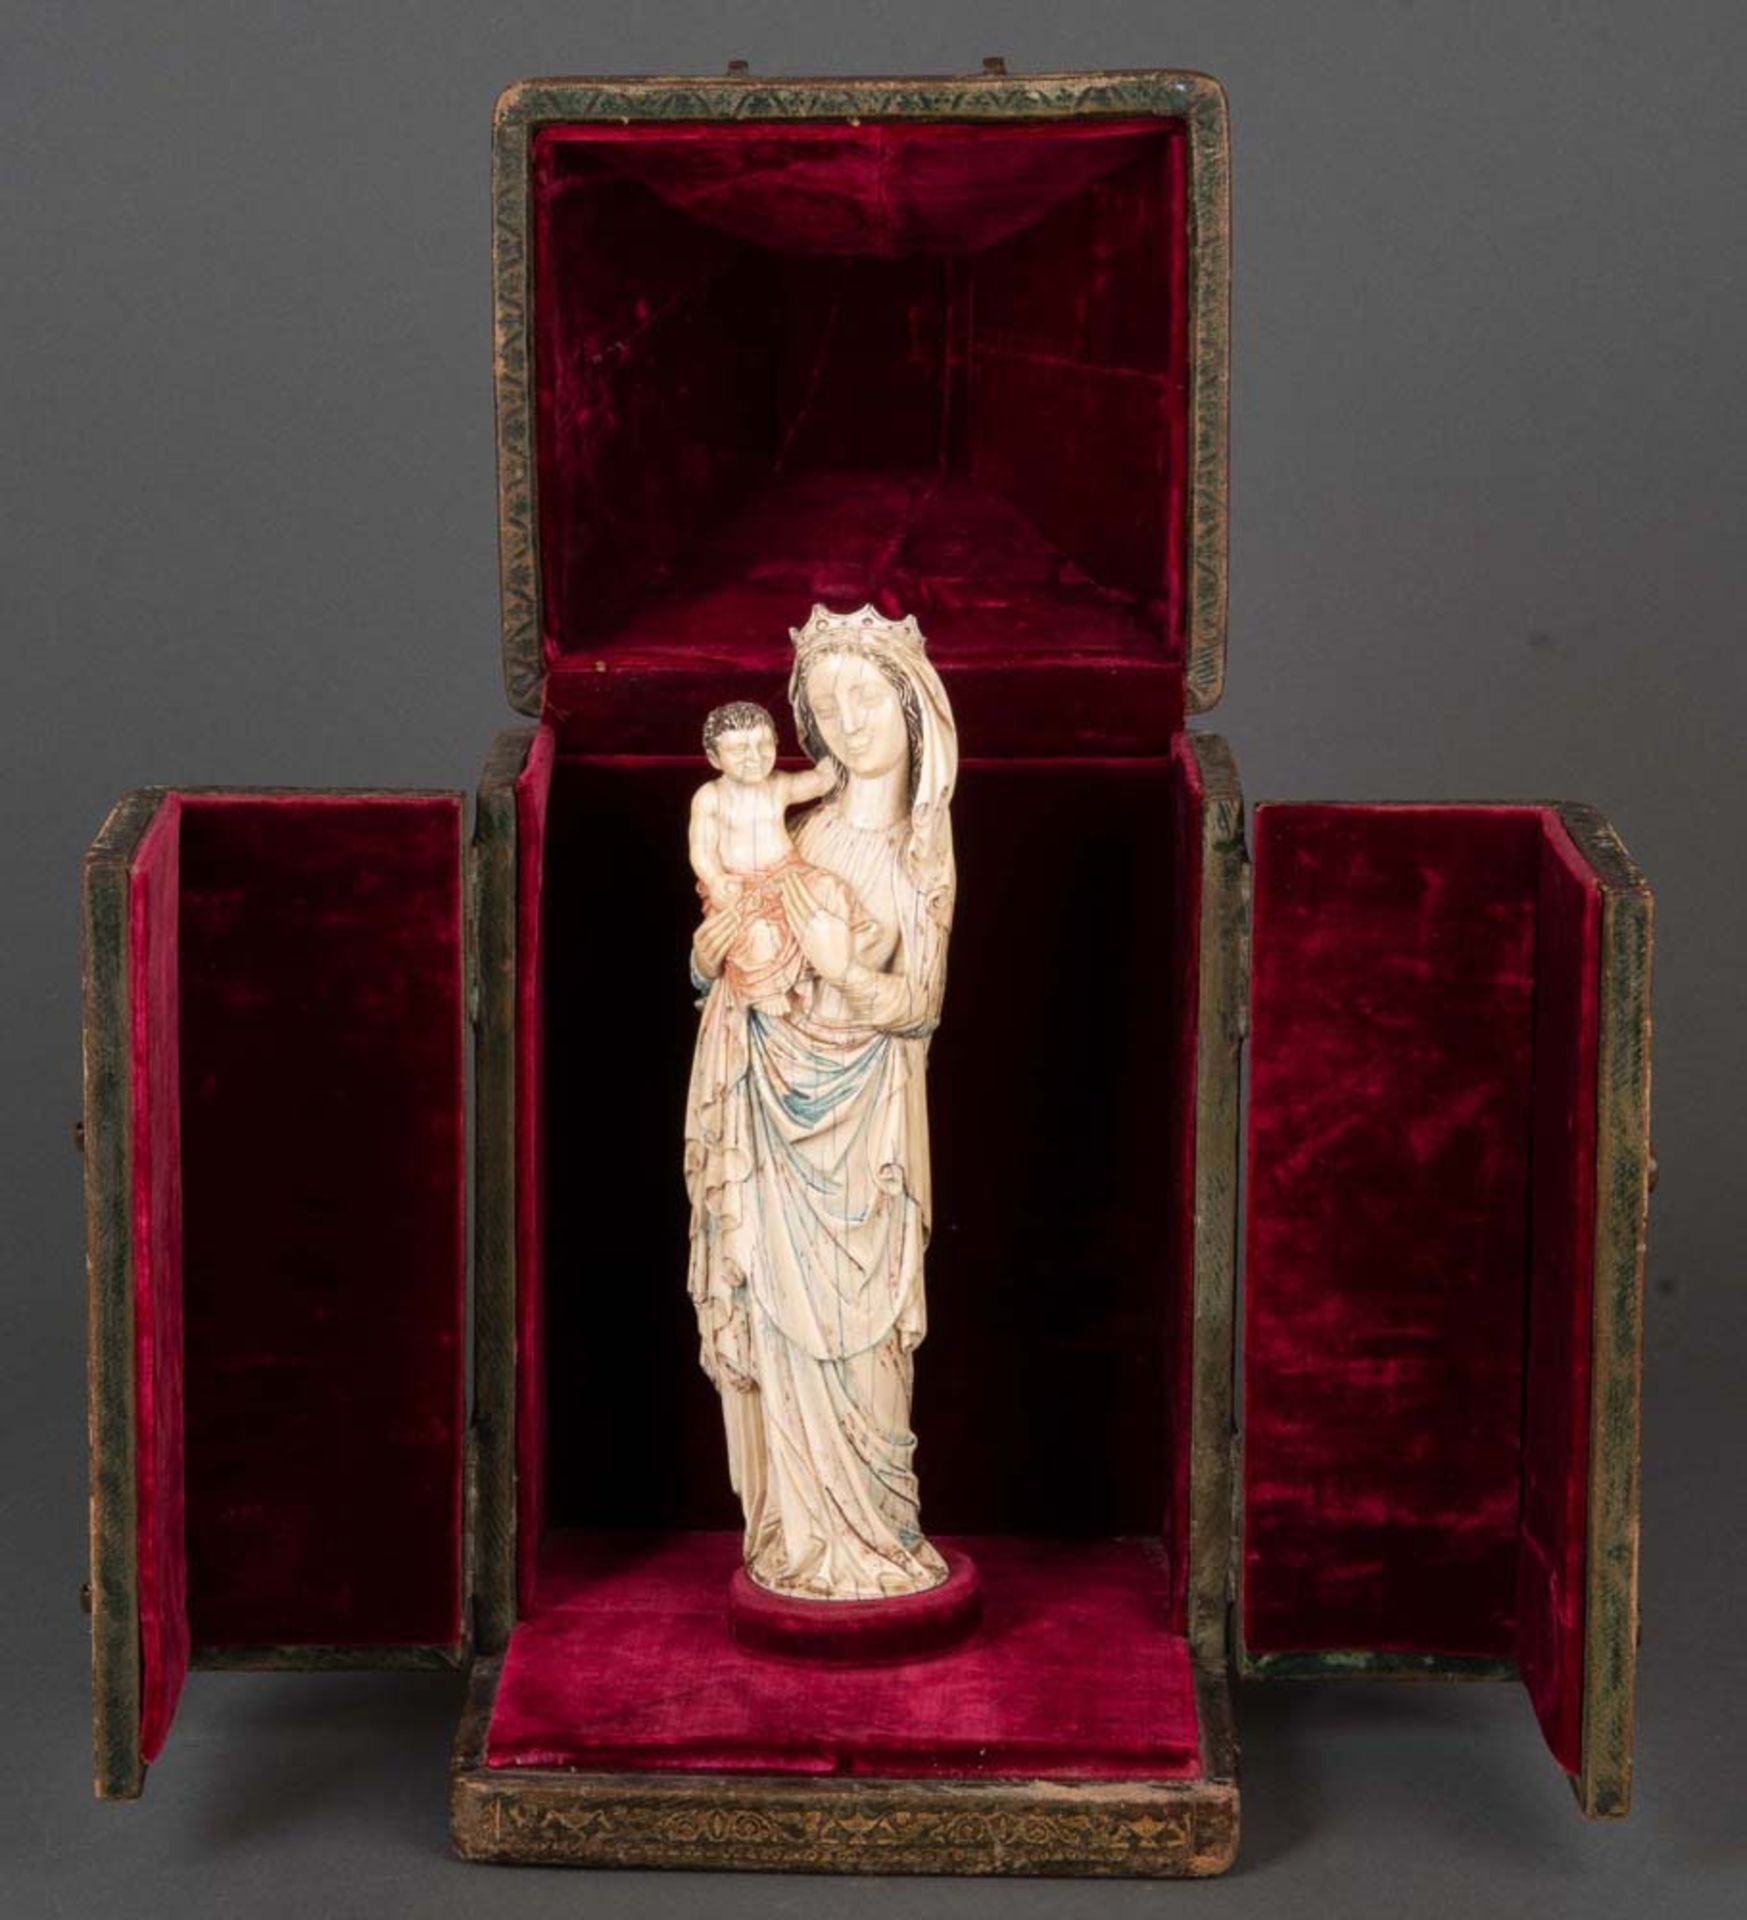 Muttergottes mit Kind. Wohl Pariser Meister des 14. Jhs. Die vollplastisch geschnitzte Madonna mit